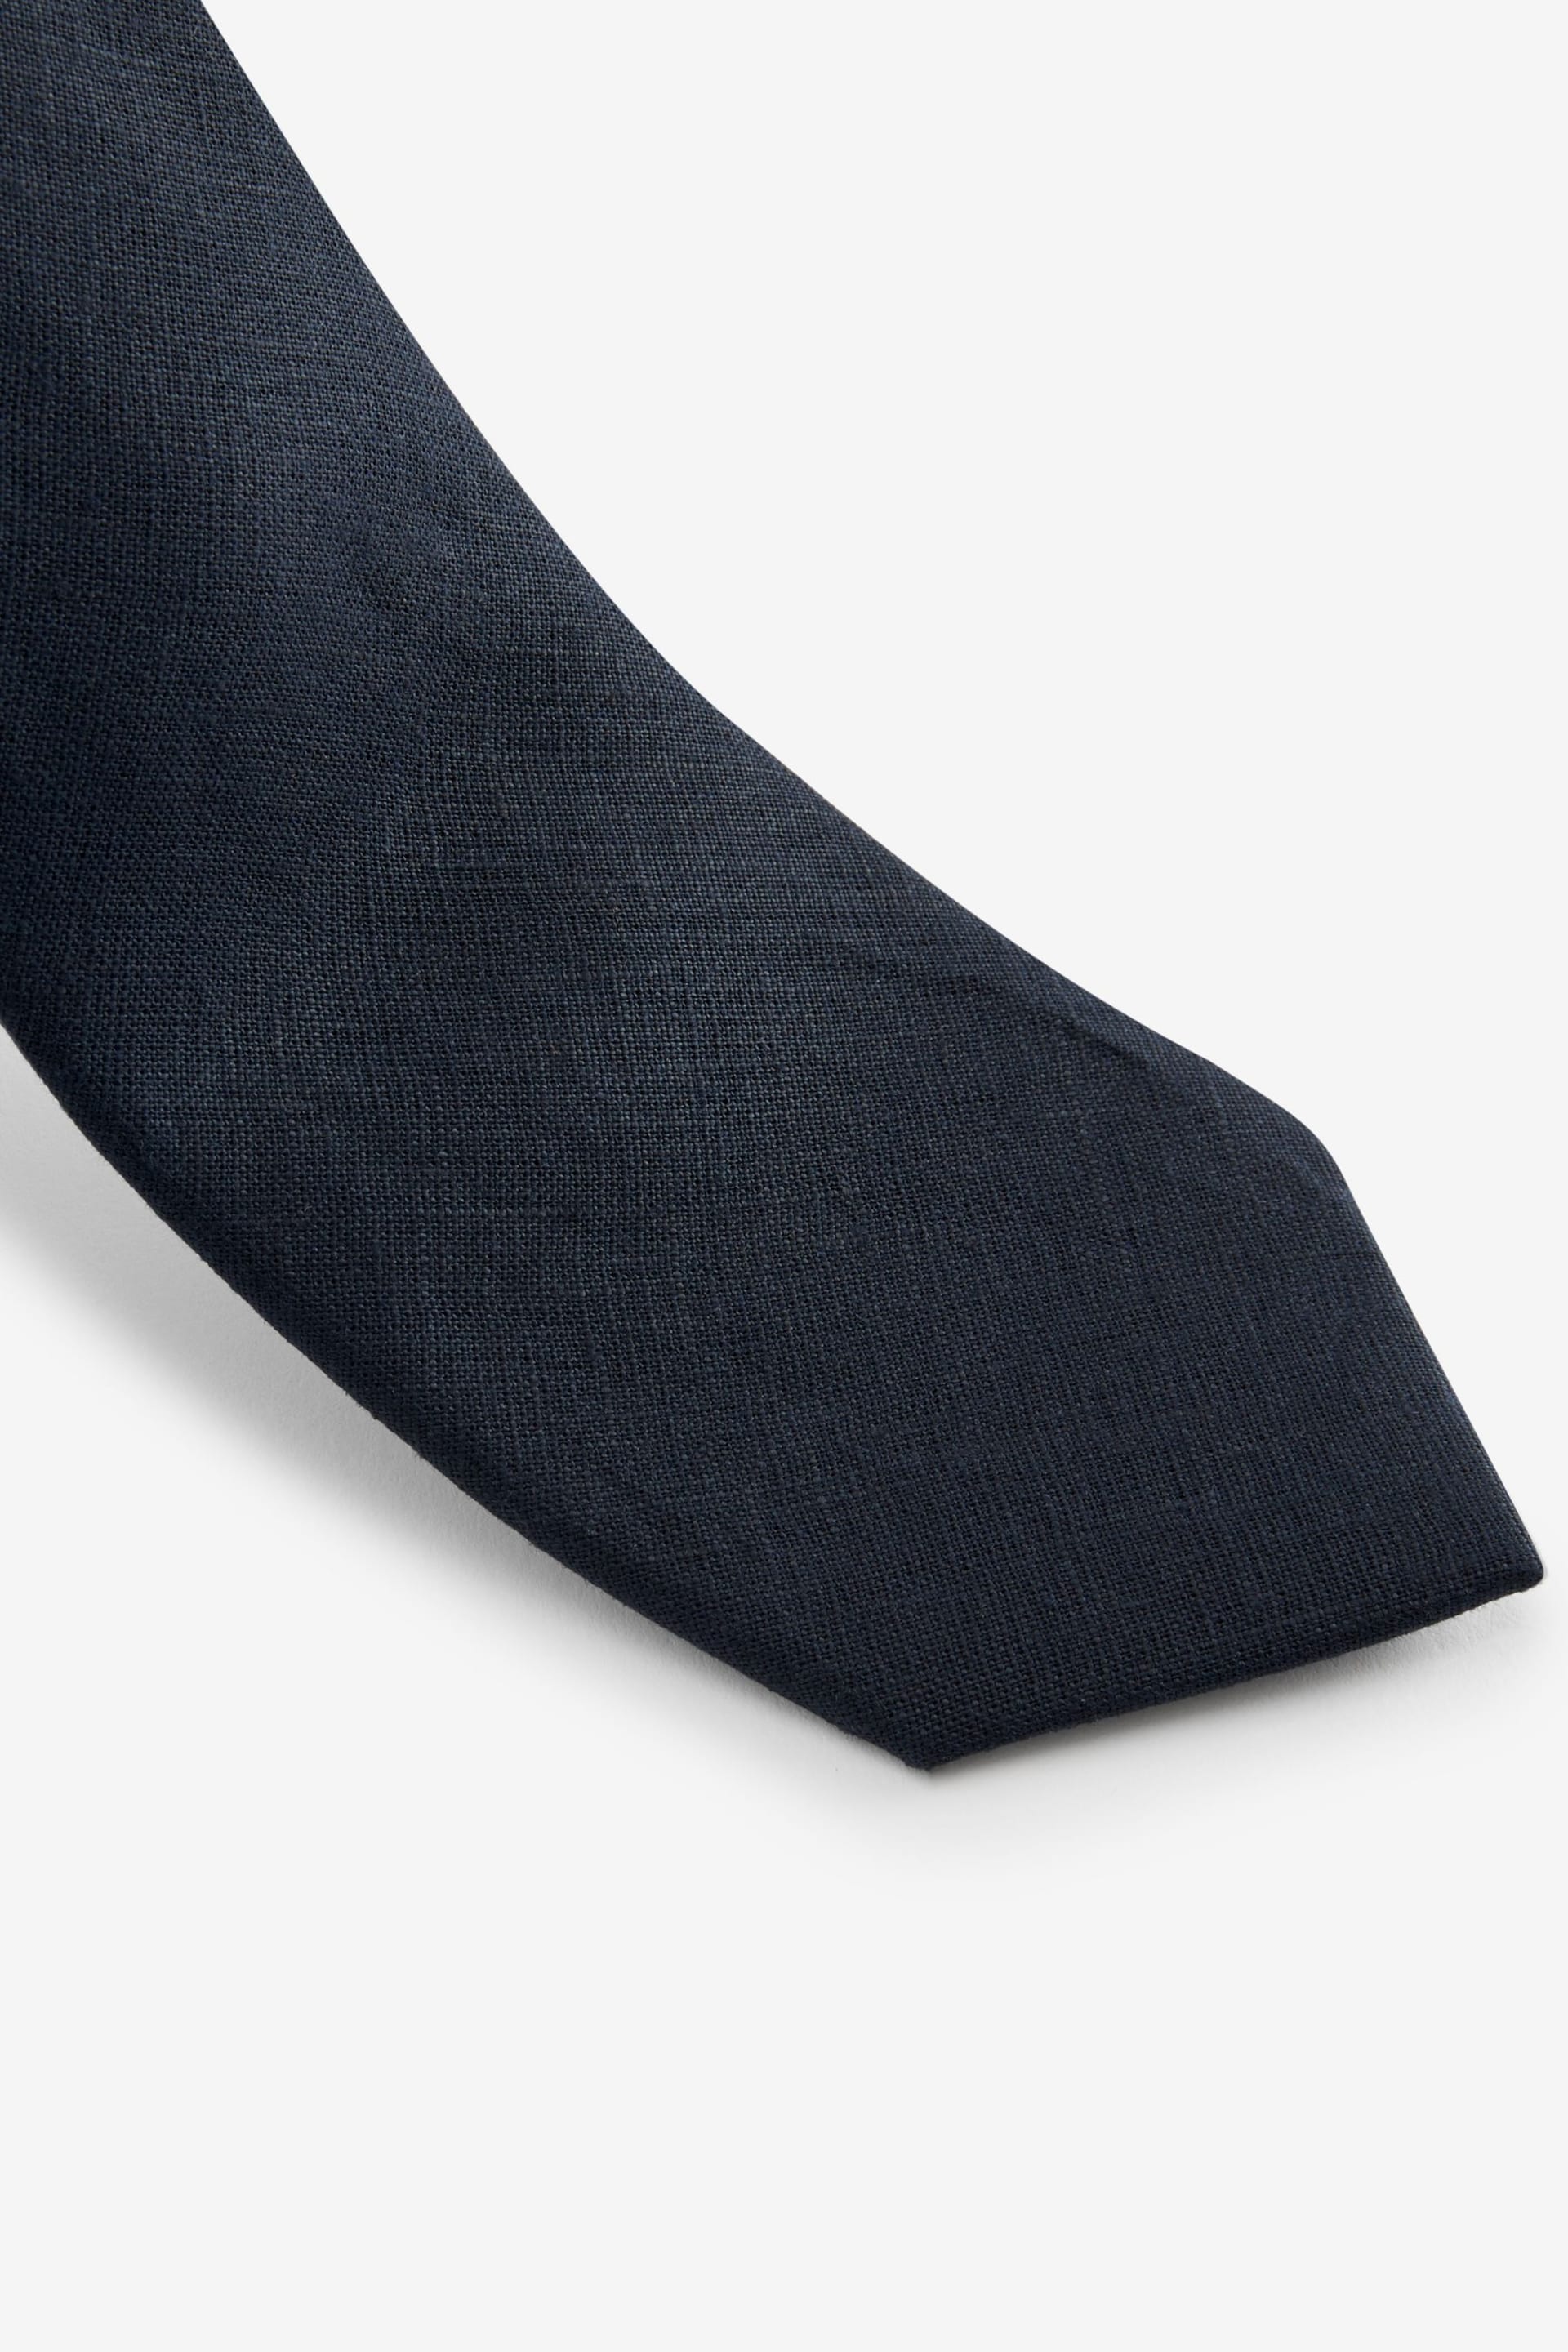 Navy Blue Linen Tie - Image 2 of 3